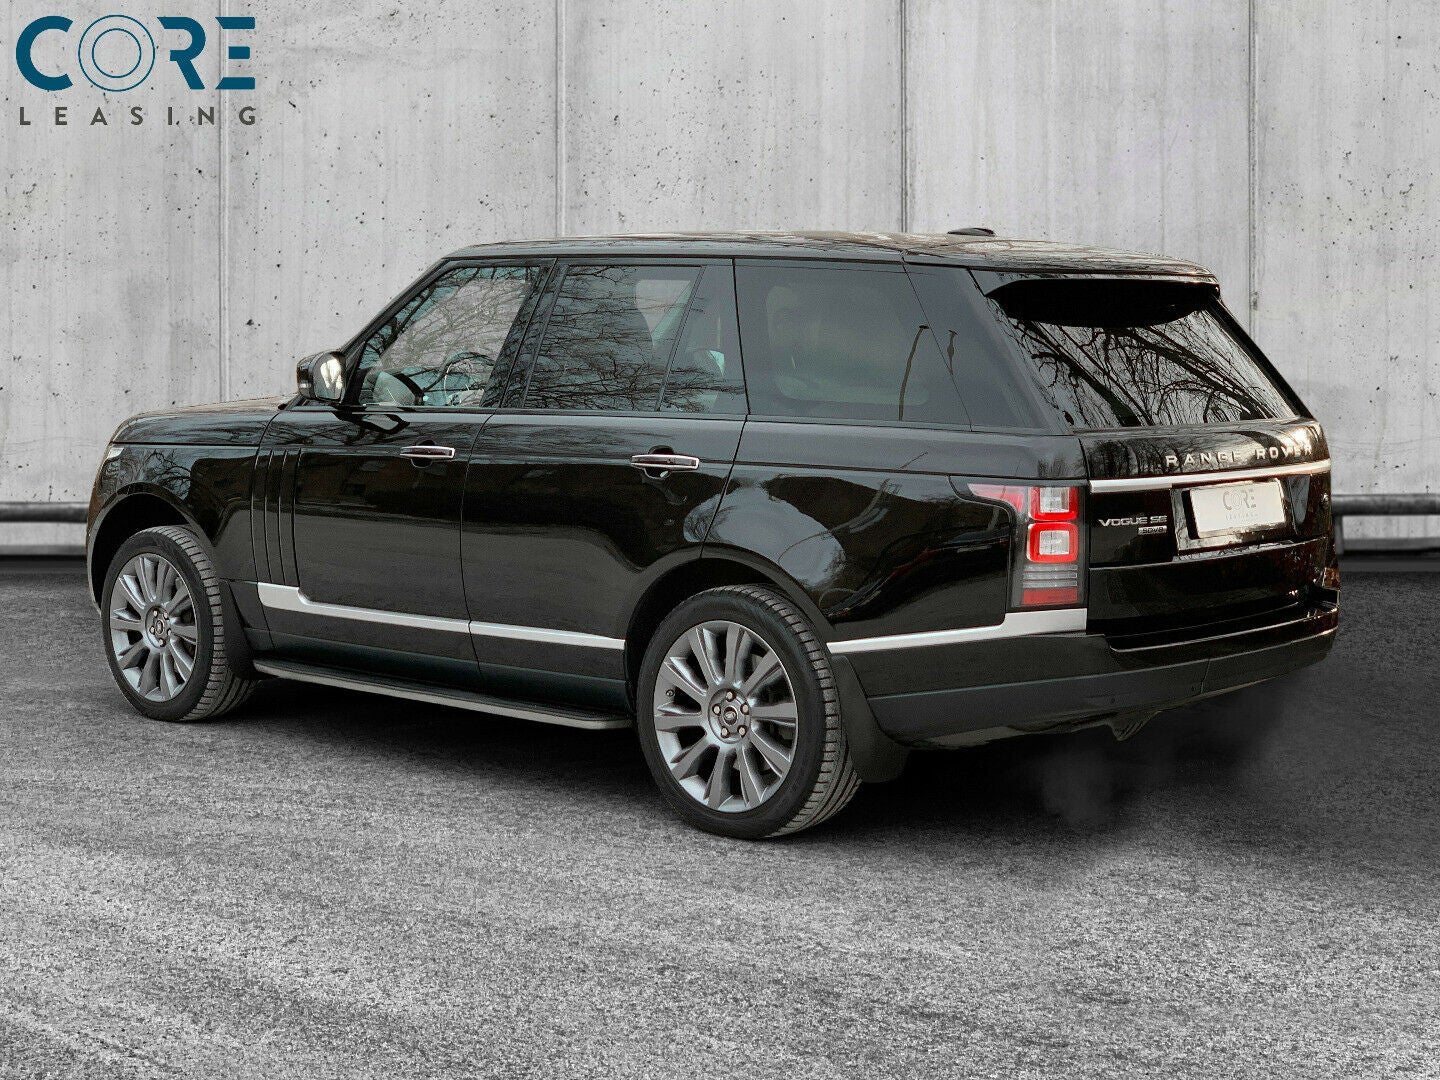 Sortmetal Land Rover Range Rover SDV8 Vogue aut. fra 2013 parkeret foran en betonmur. CORE Leasing A/S er eksperter i Land Rover leasing.